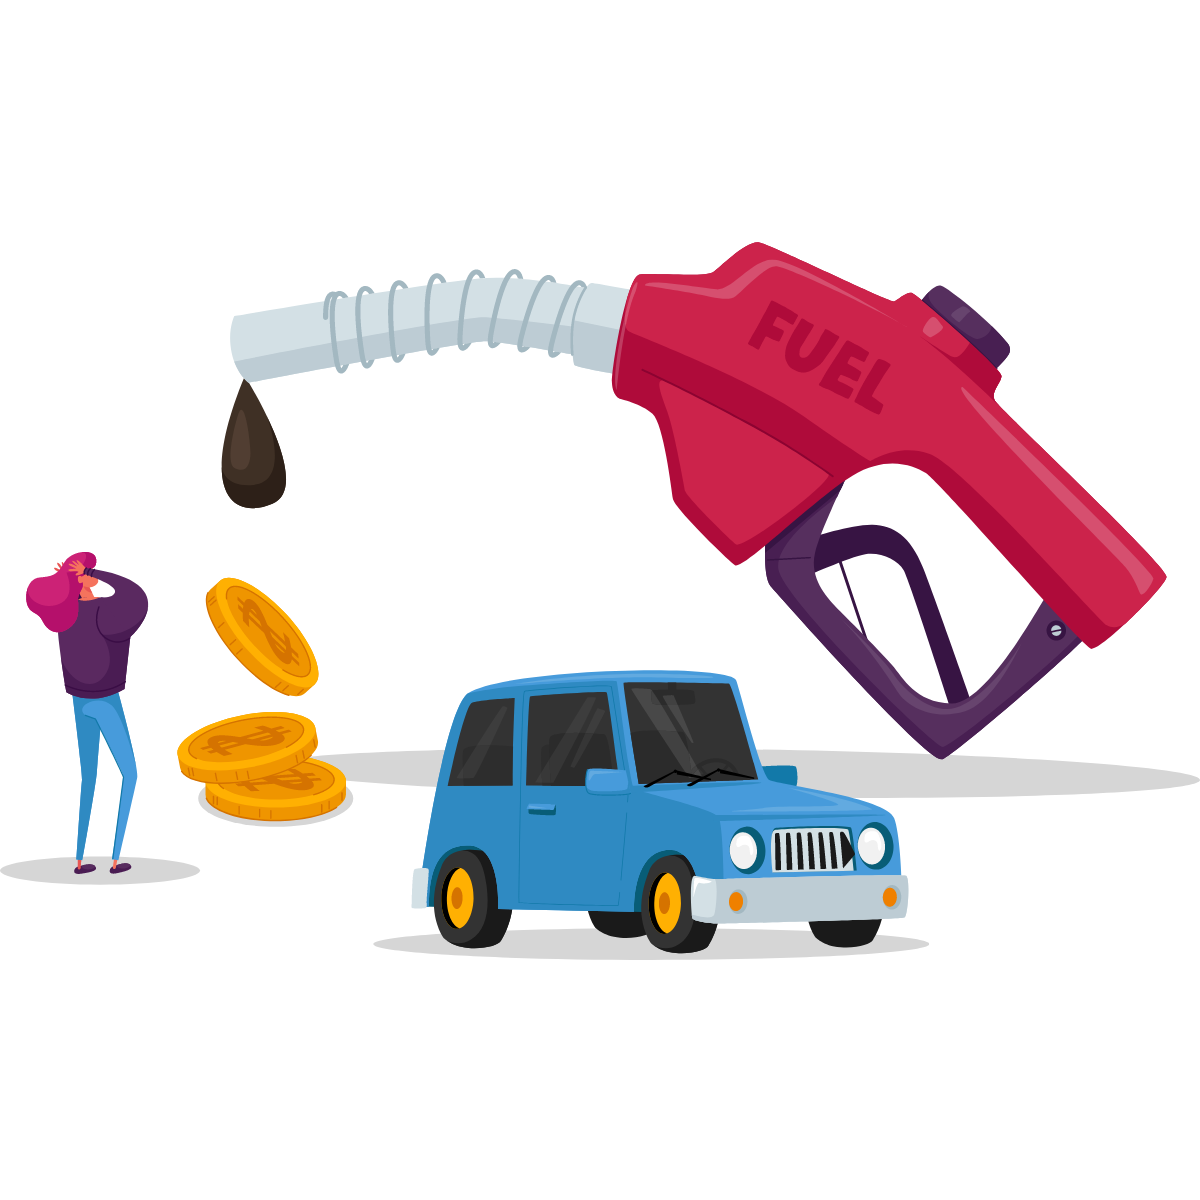 Chèque carburant pour lutter contre la hausse des prix et aider les familles modestes.